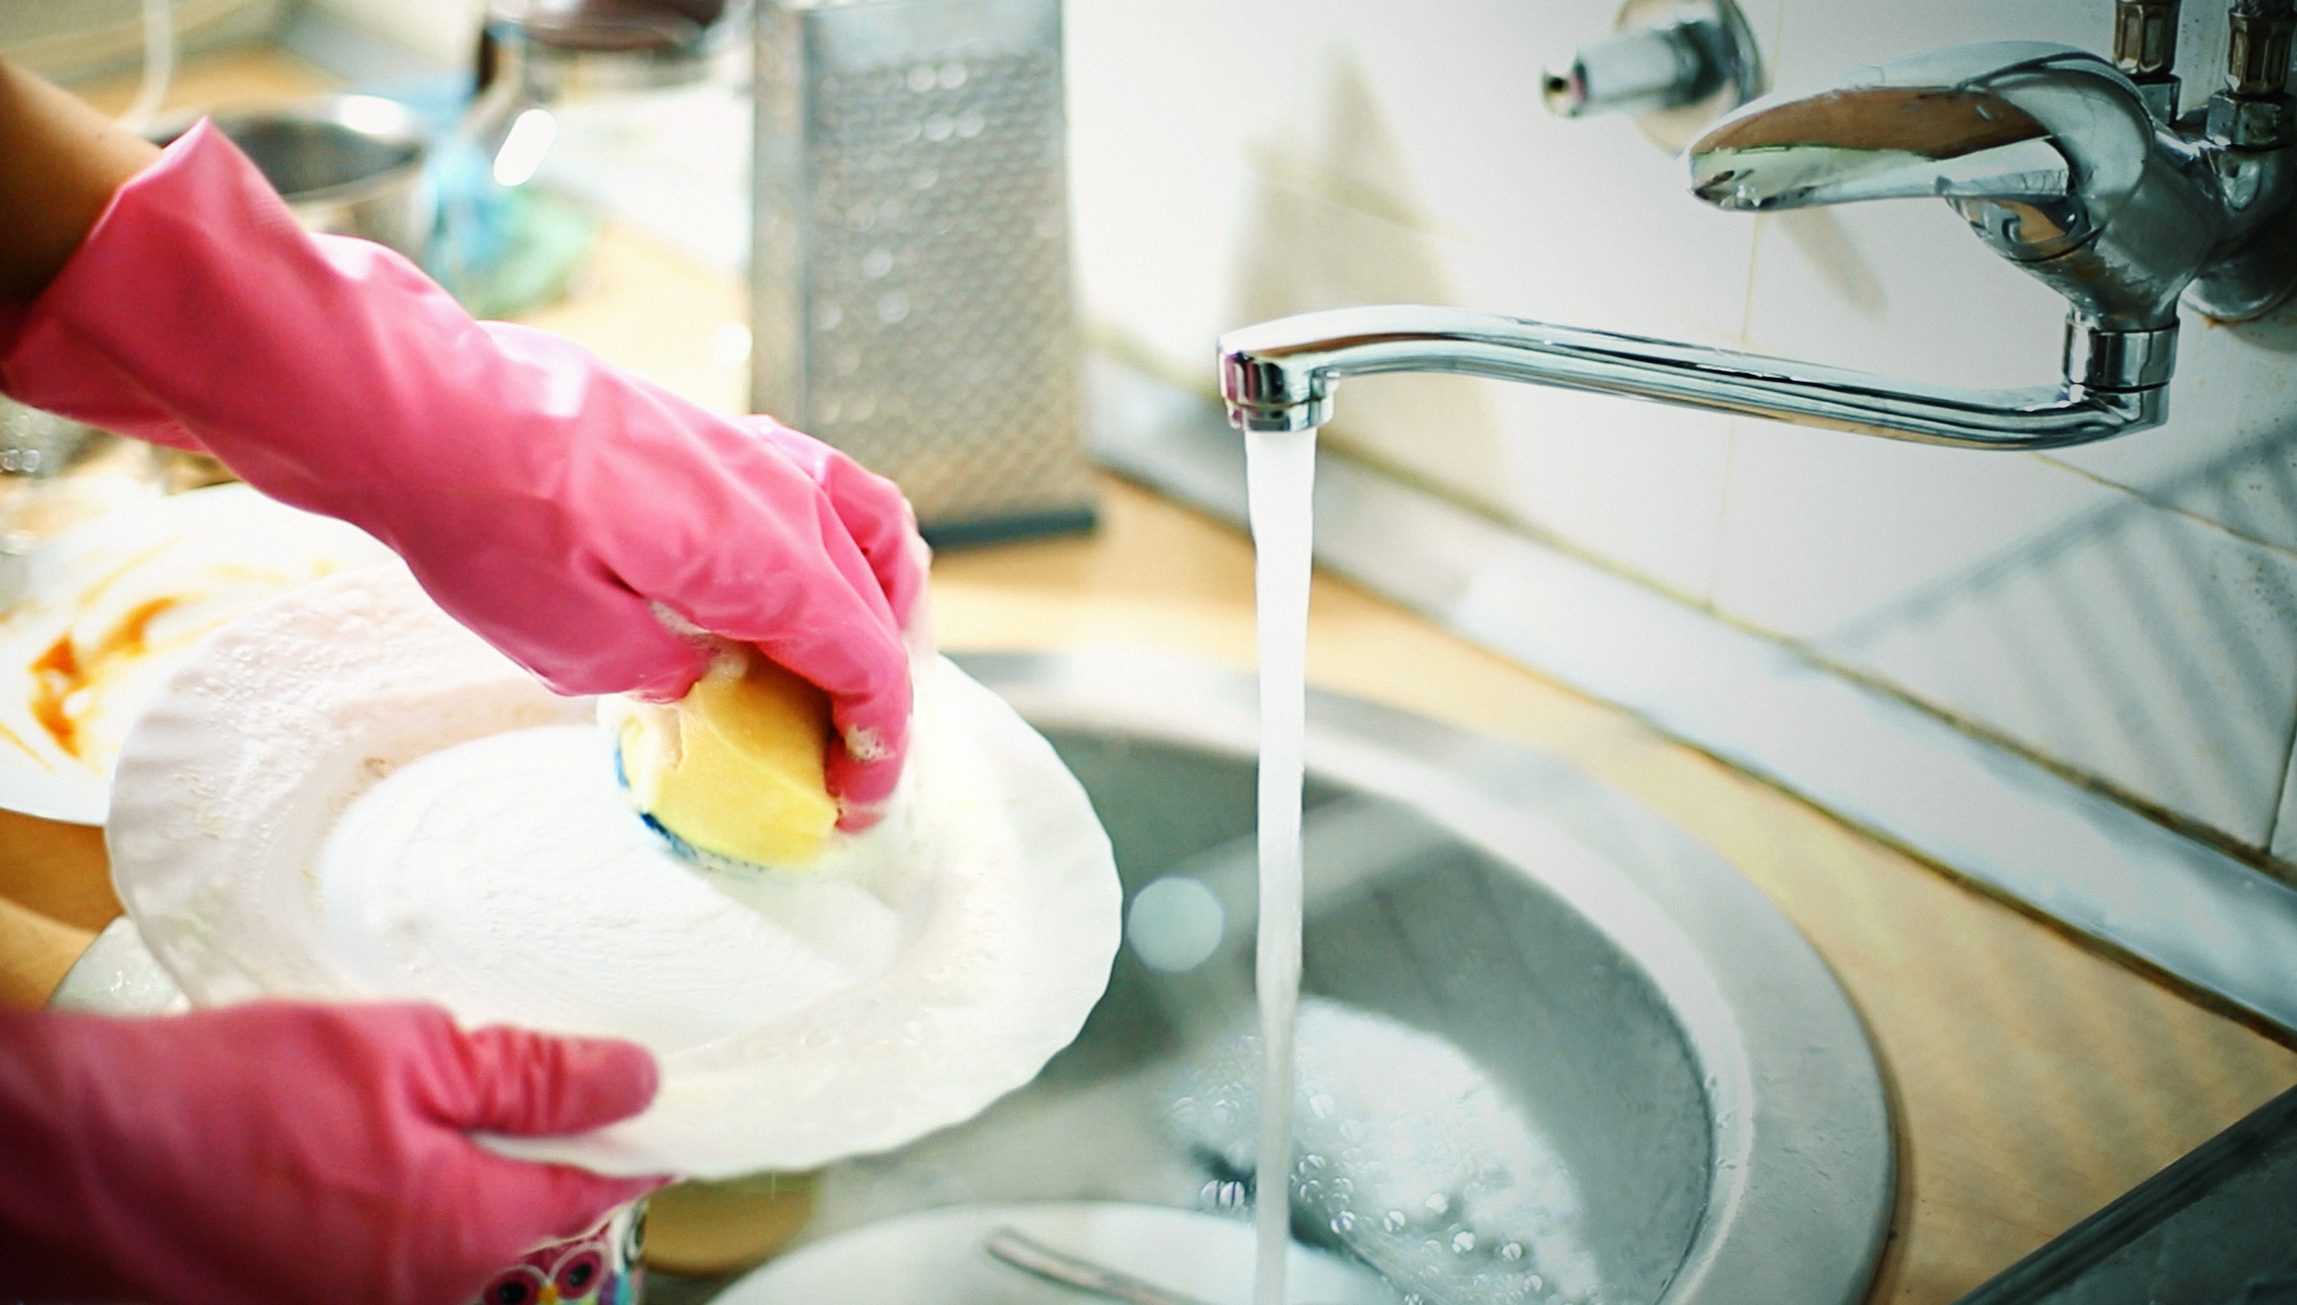 Красота и долговечность фарфоровой посуды полностью зависит от ее грамотного использования и хранения. Прочность фарфора определяется технологией изготовления и частотой пользования.